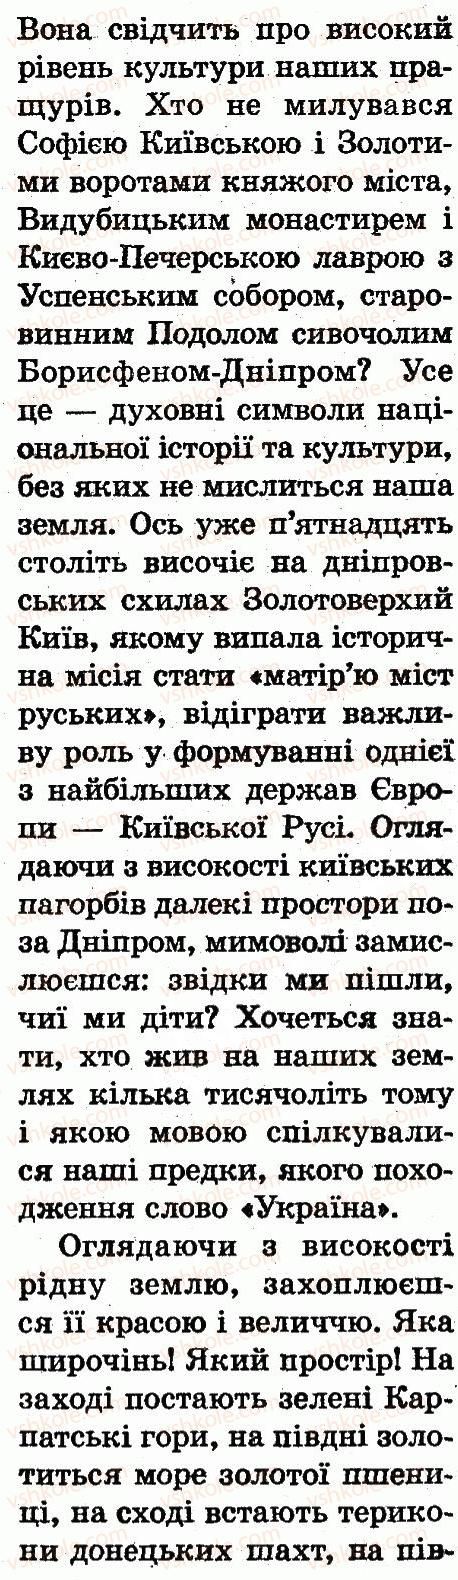 1-prirodoznavstvo-i-v-gruschinska-2012--mandrivka-pyata-nasha-krayinaukrayina-сторінка114-rnd6715.jpg